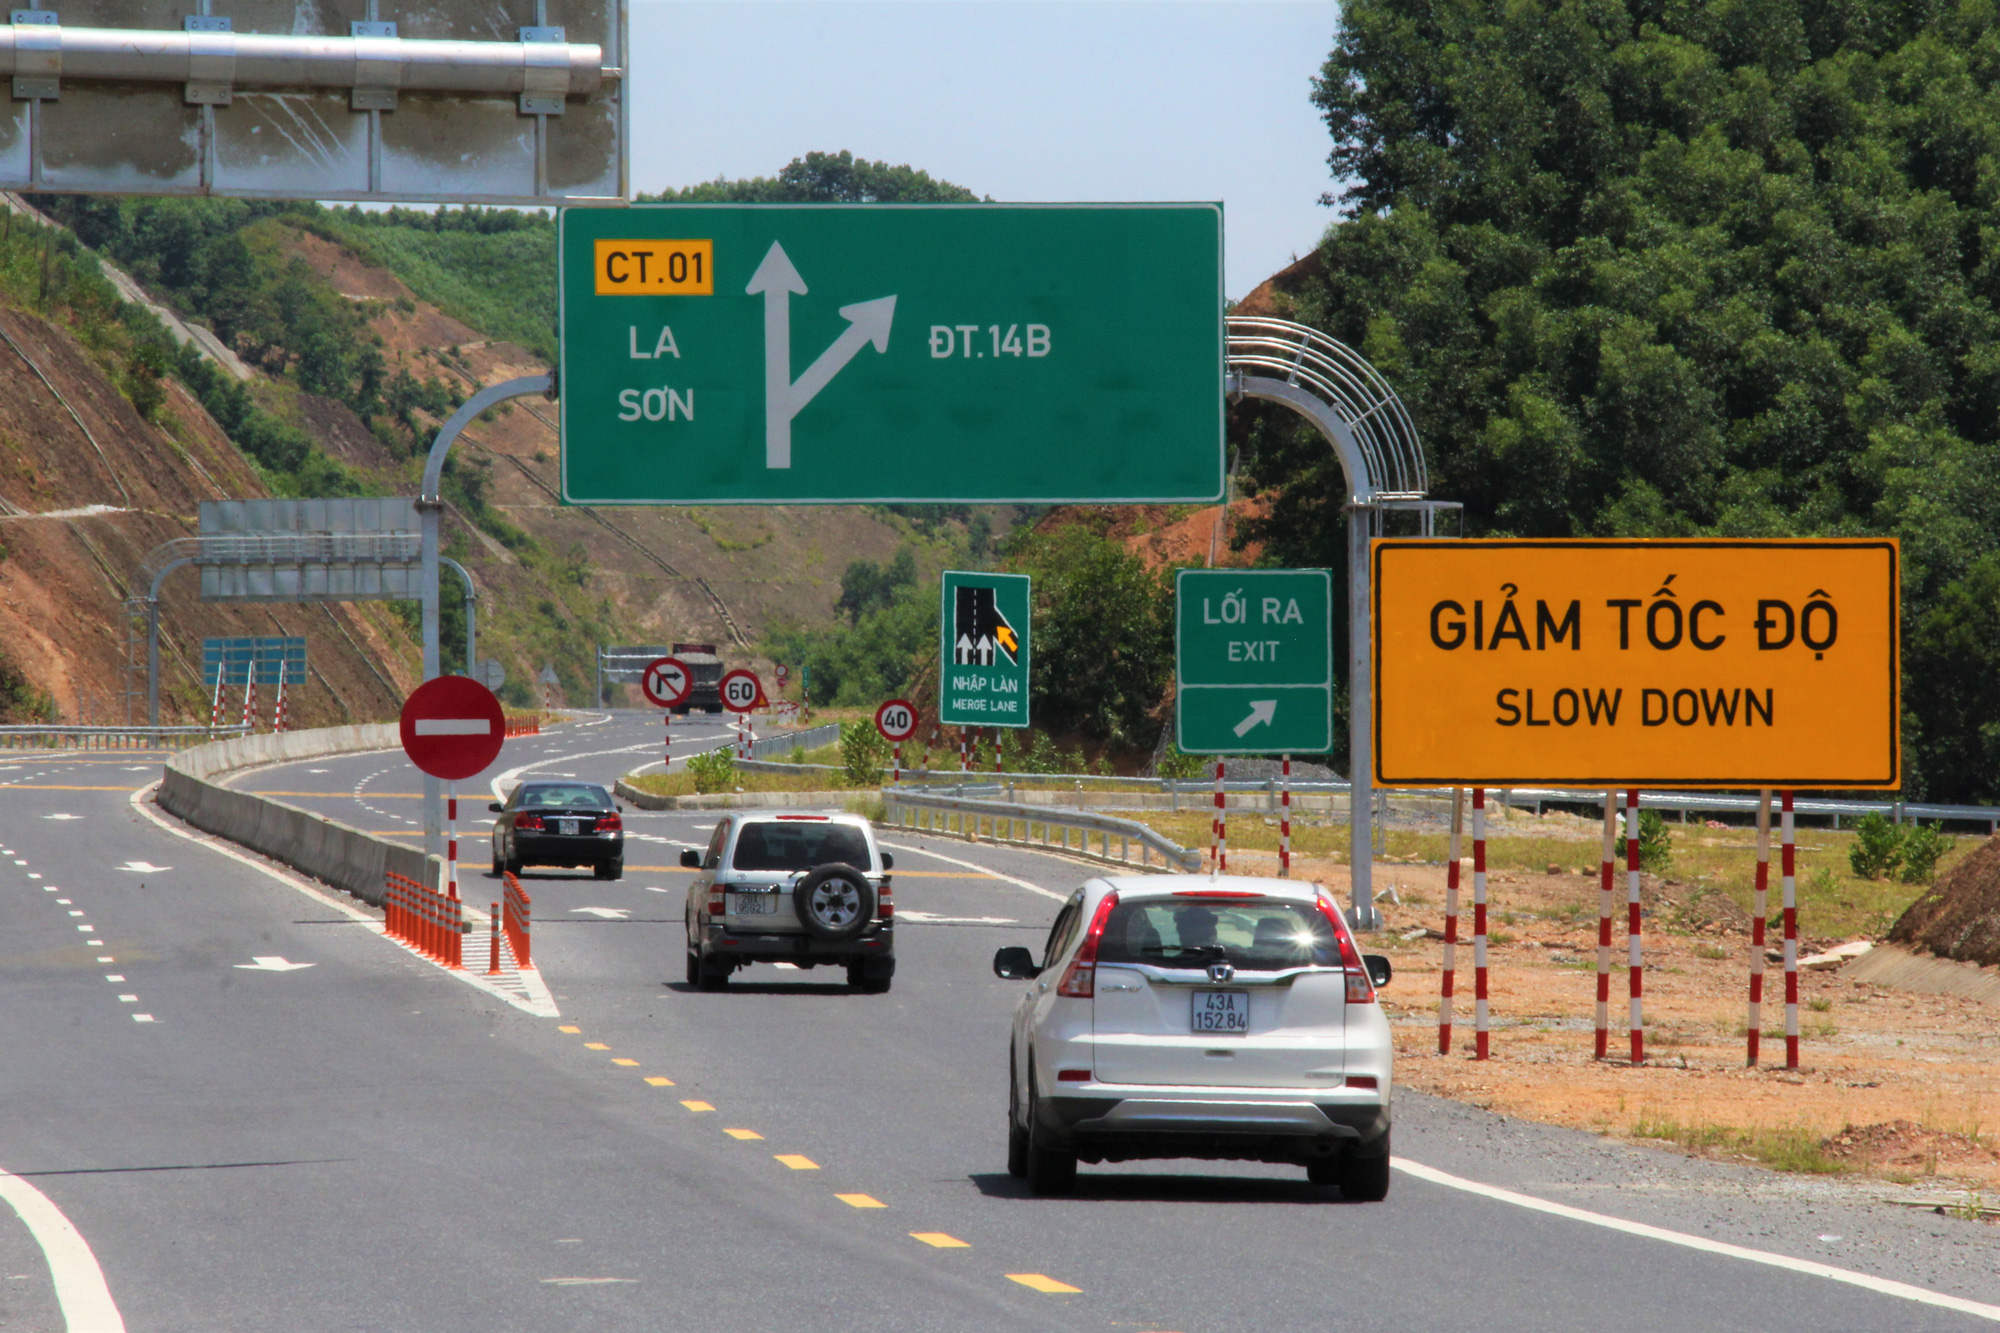 Hệ thống đường cao tốc có vai trò quan trọng đối với sự phát triển kinh tế - xã hội.